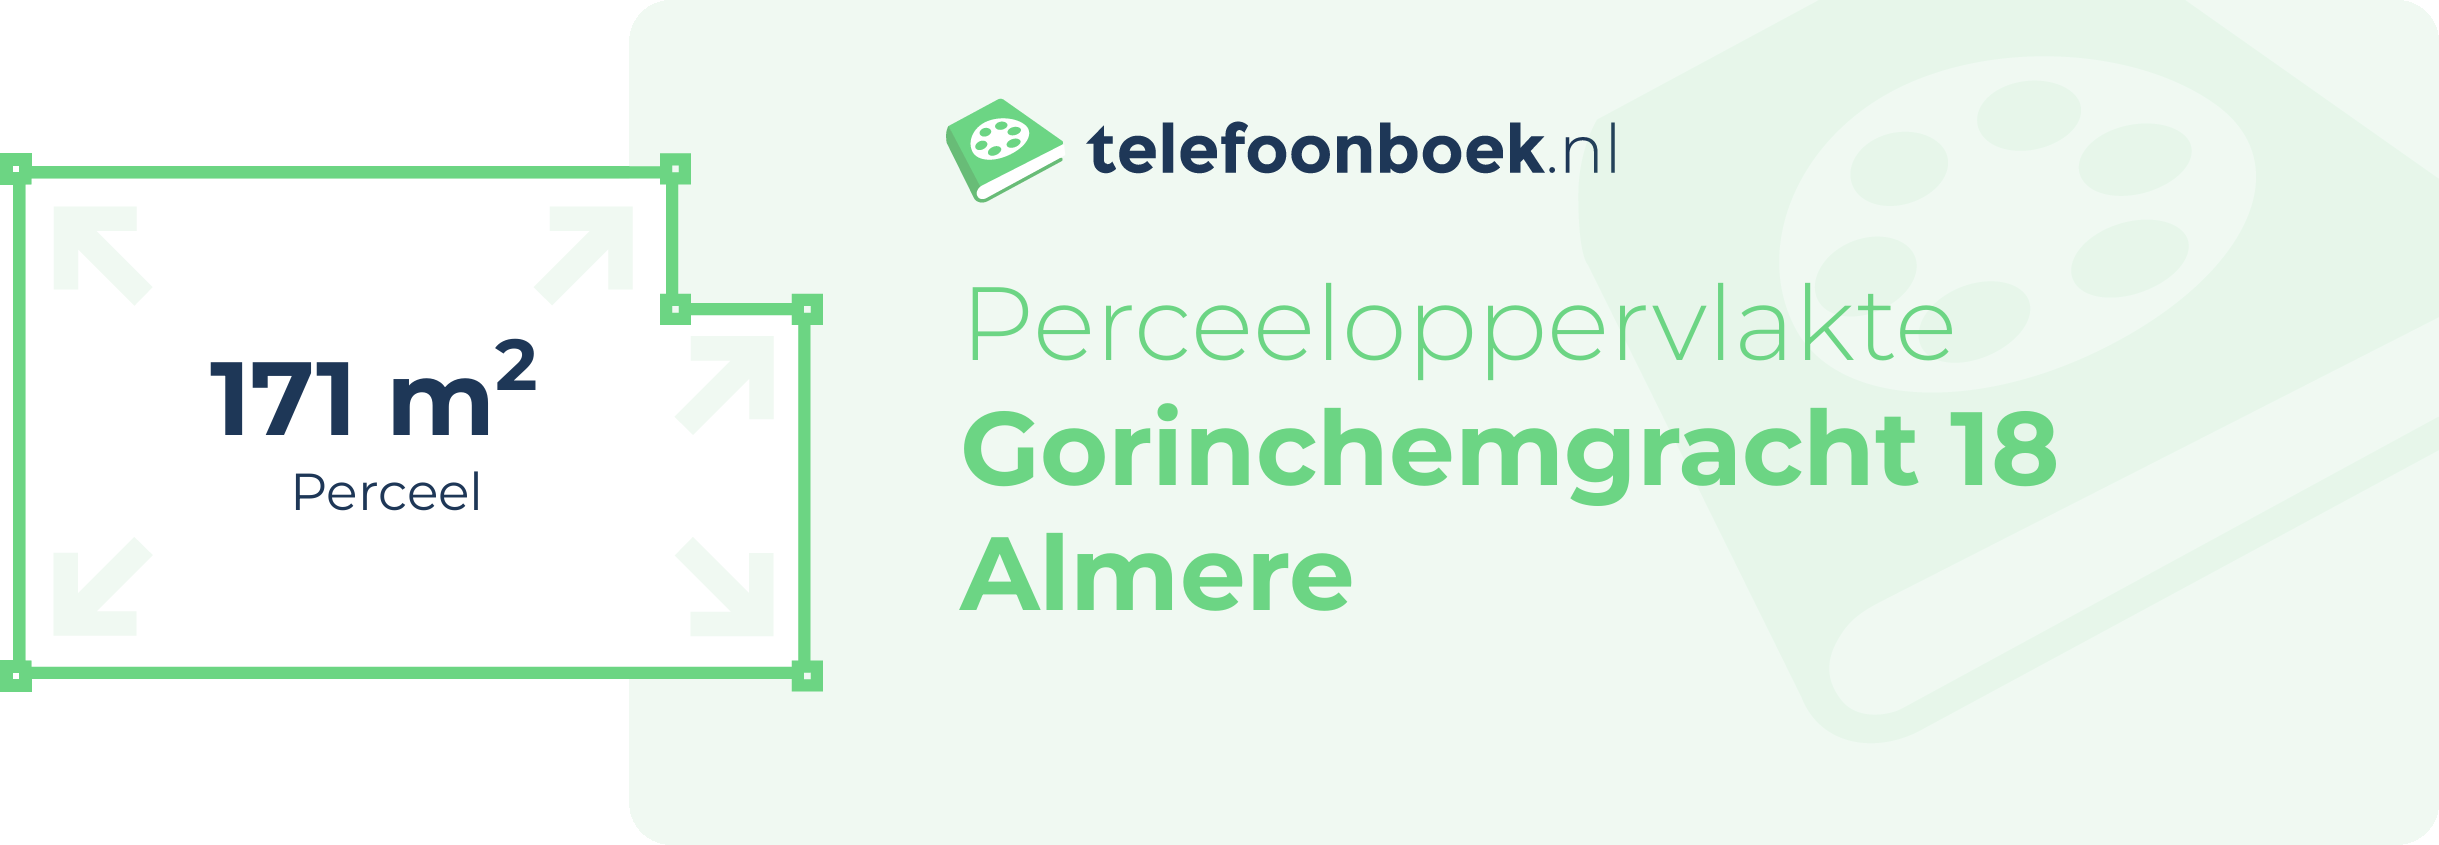 Perceeloppervlakte Gorinchemgracht 18 Almere